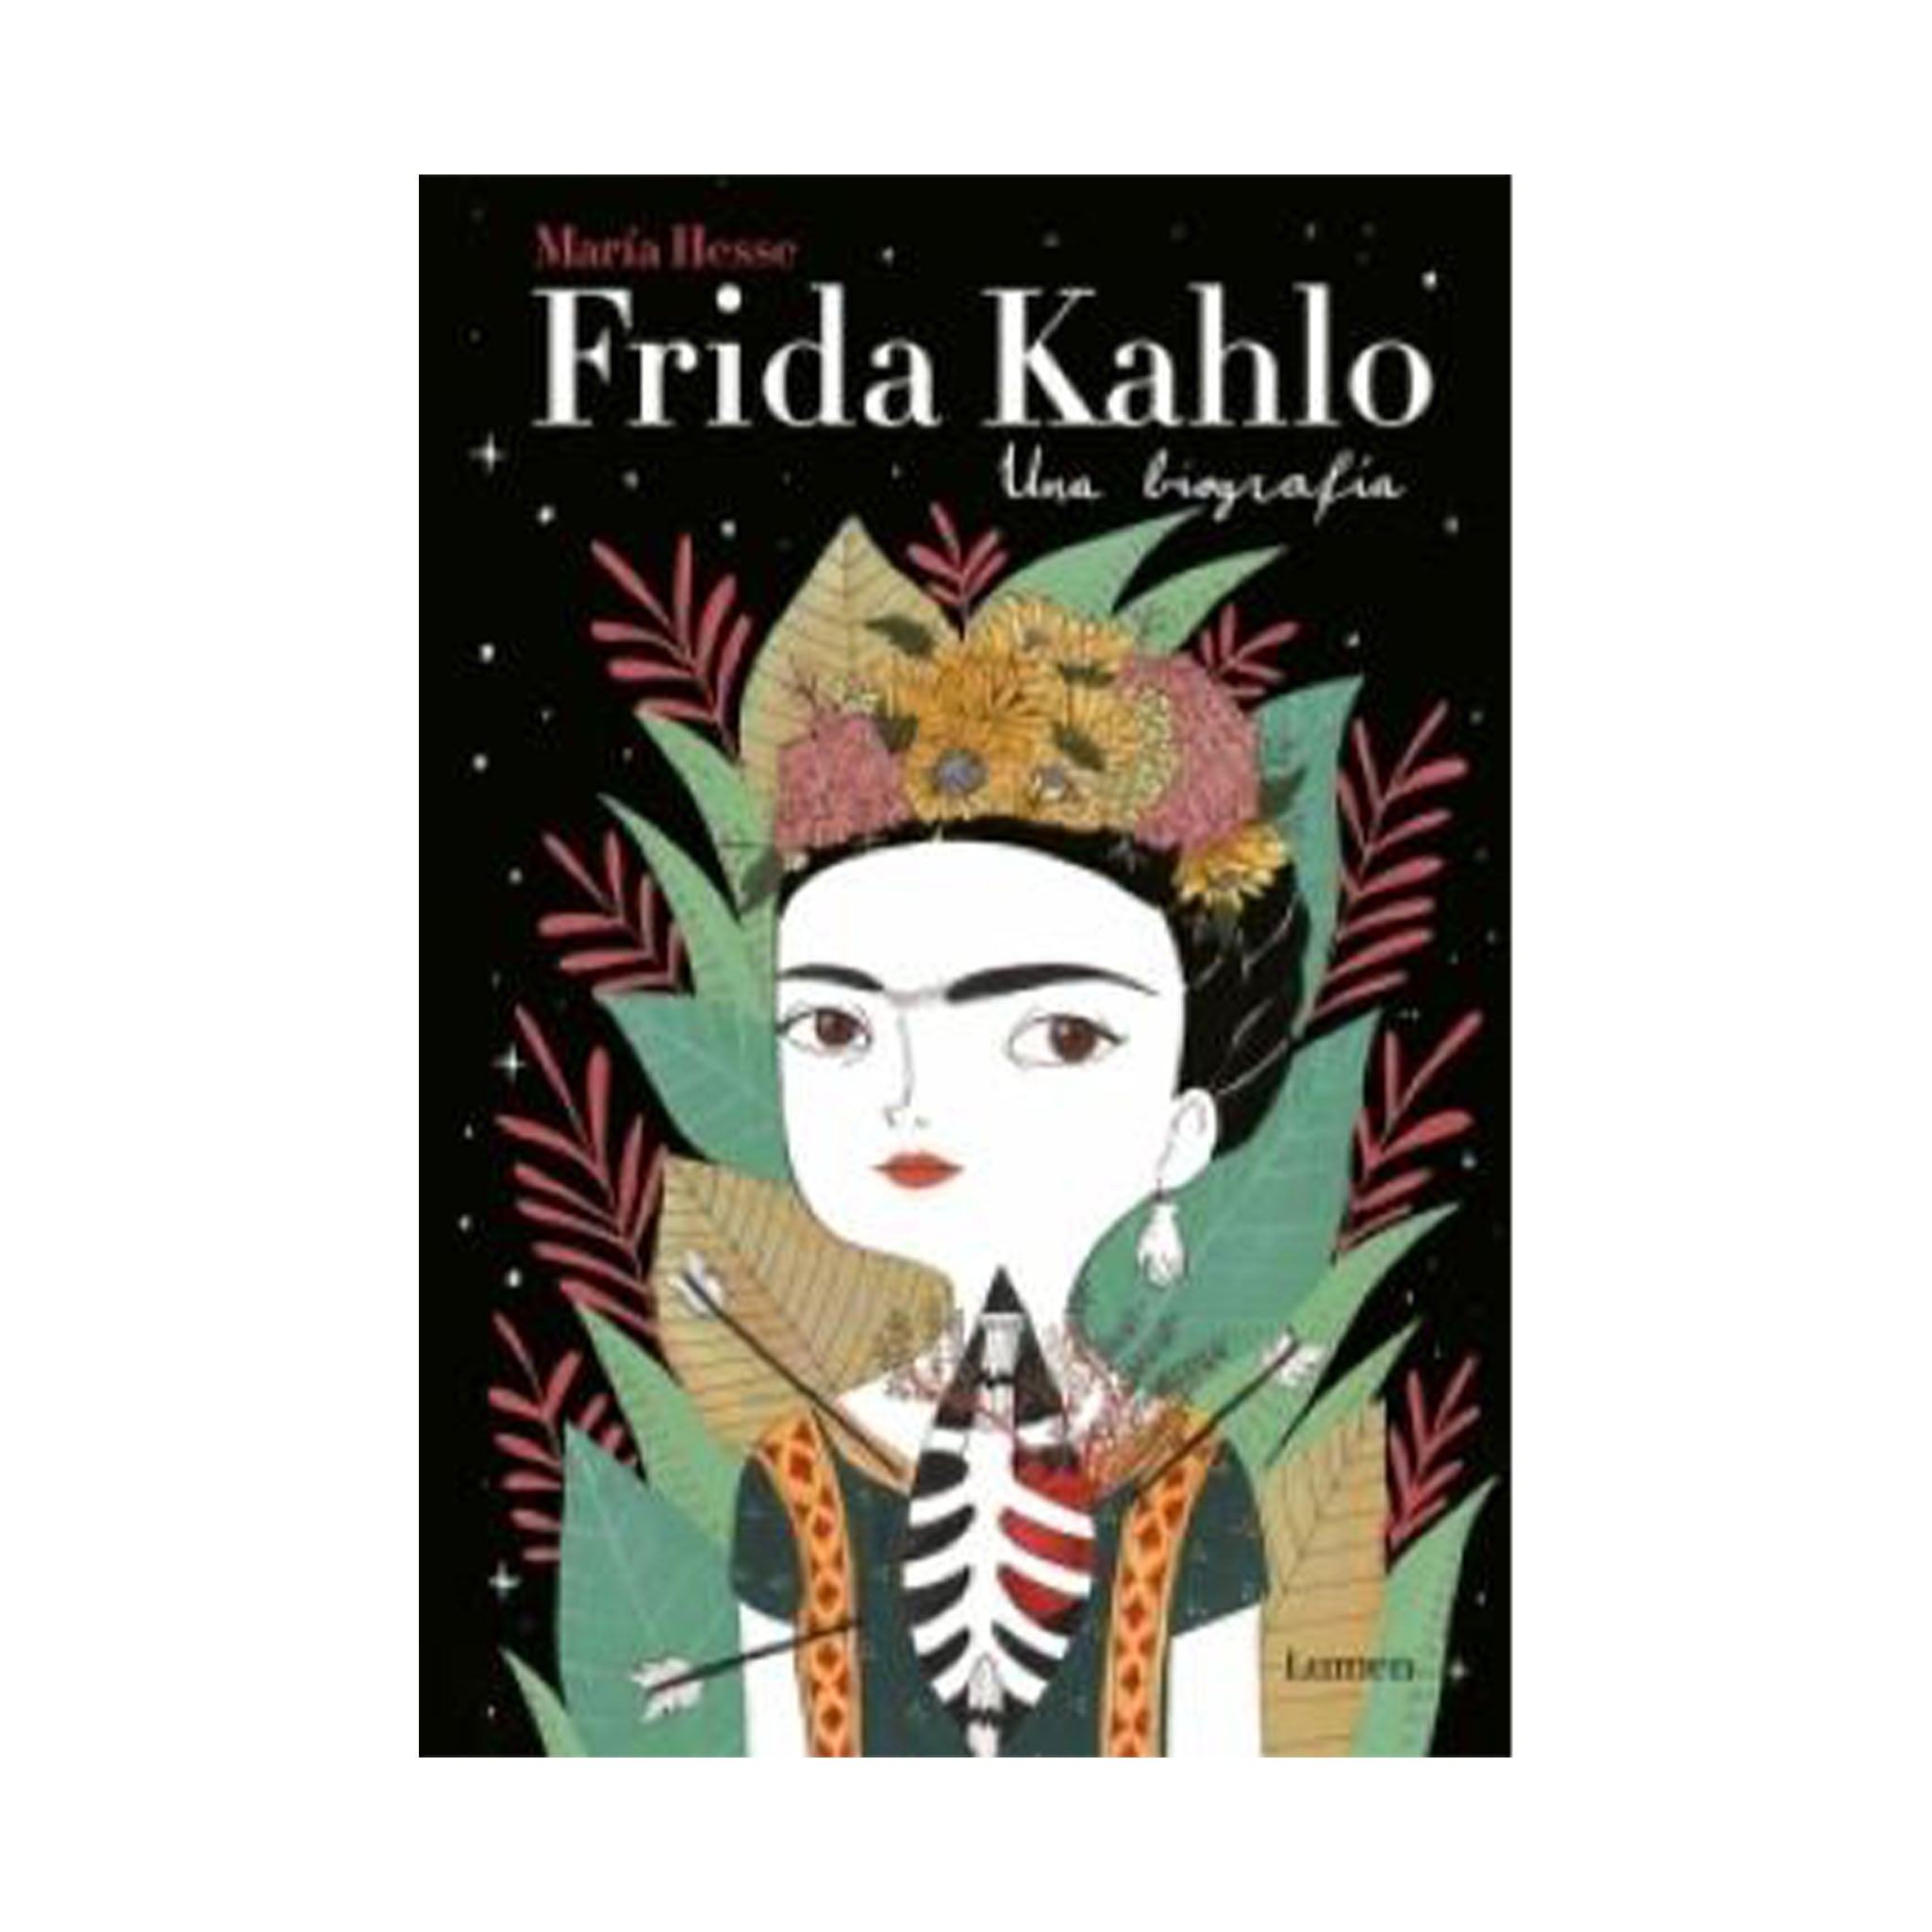 Frida Kahlo una biografía